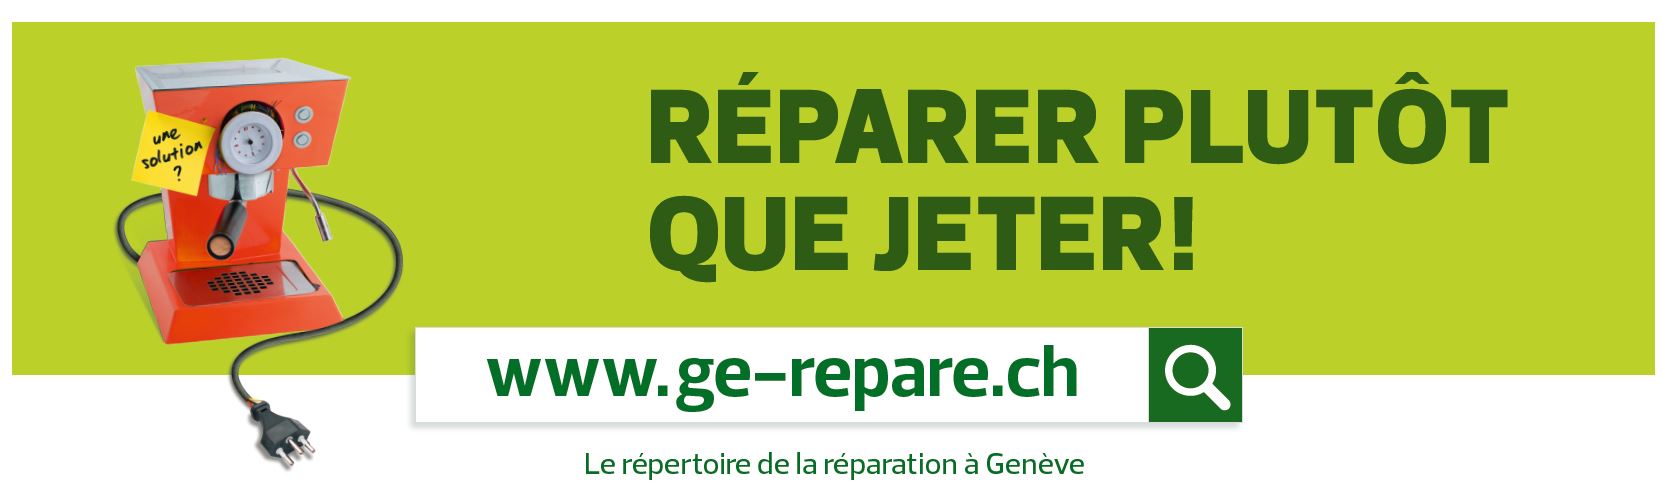 Ge-repare